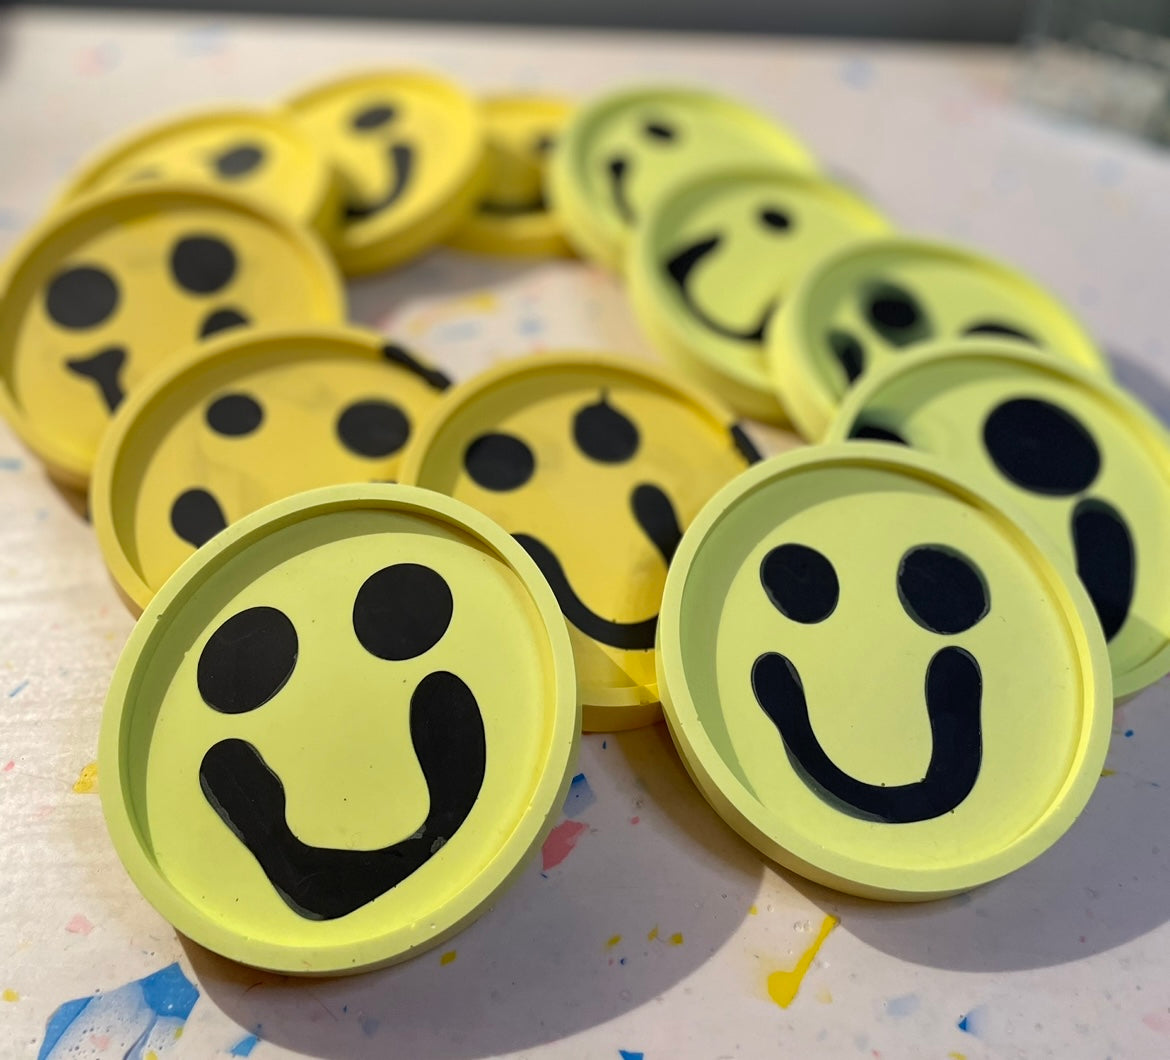 Coaster Set - Smiley - Neon Yellow